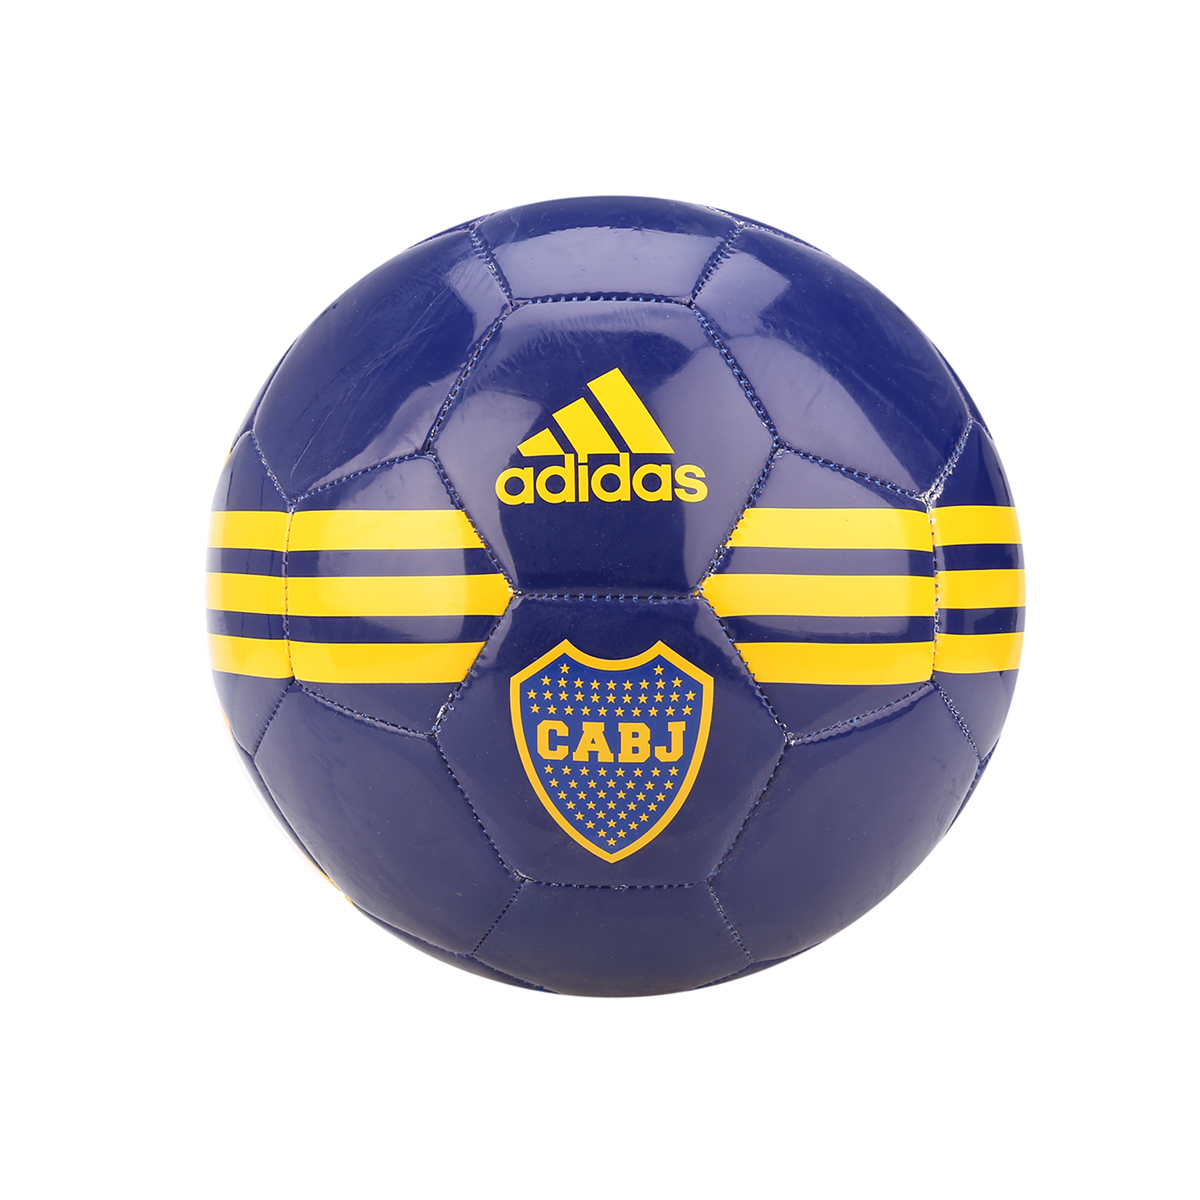 Pelota adidas Boca Juniors,  image number null